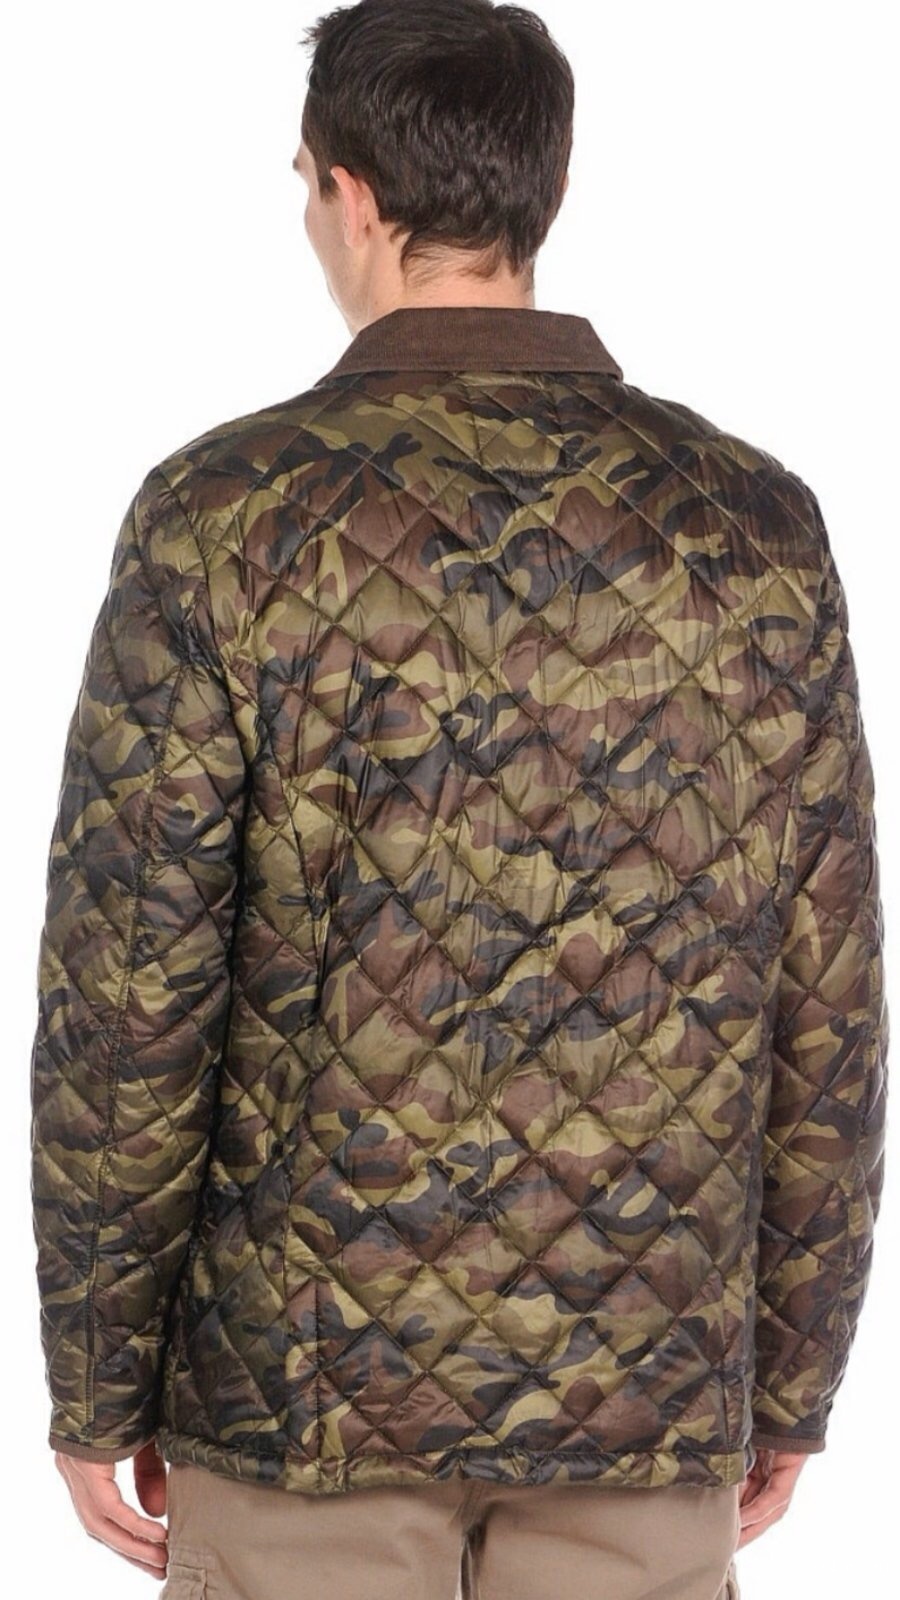 Куртка RIFLE, размер S/M